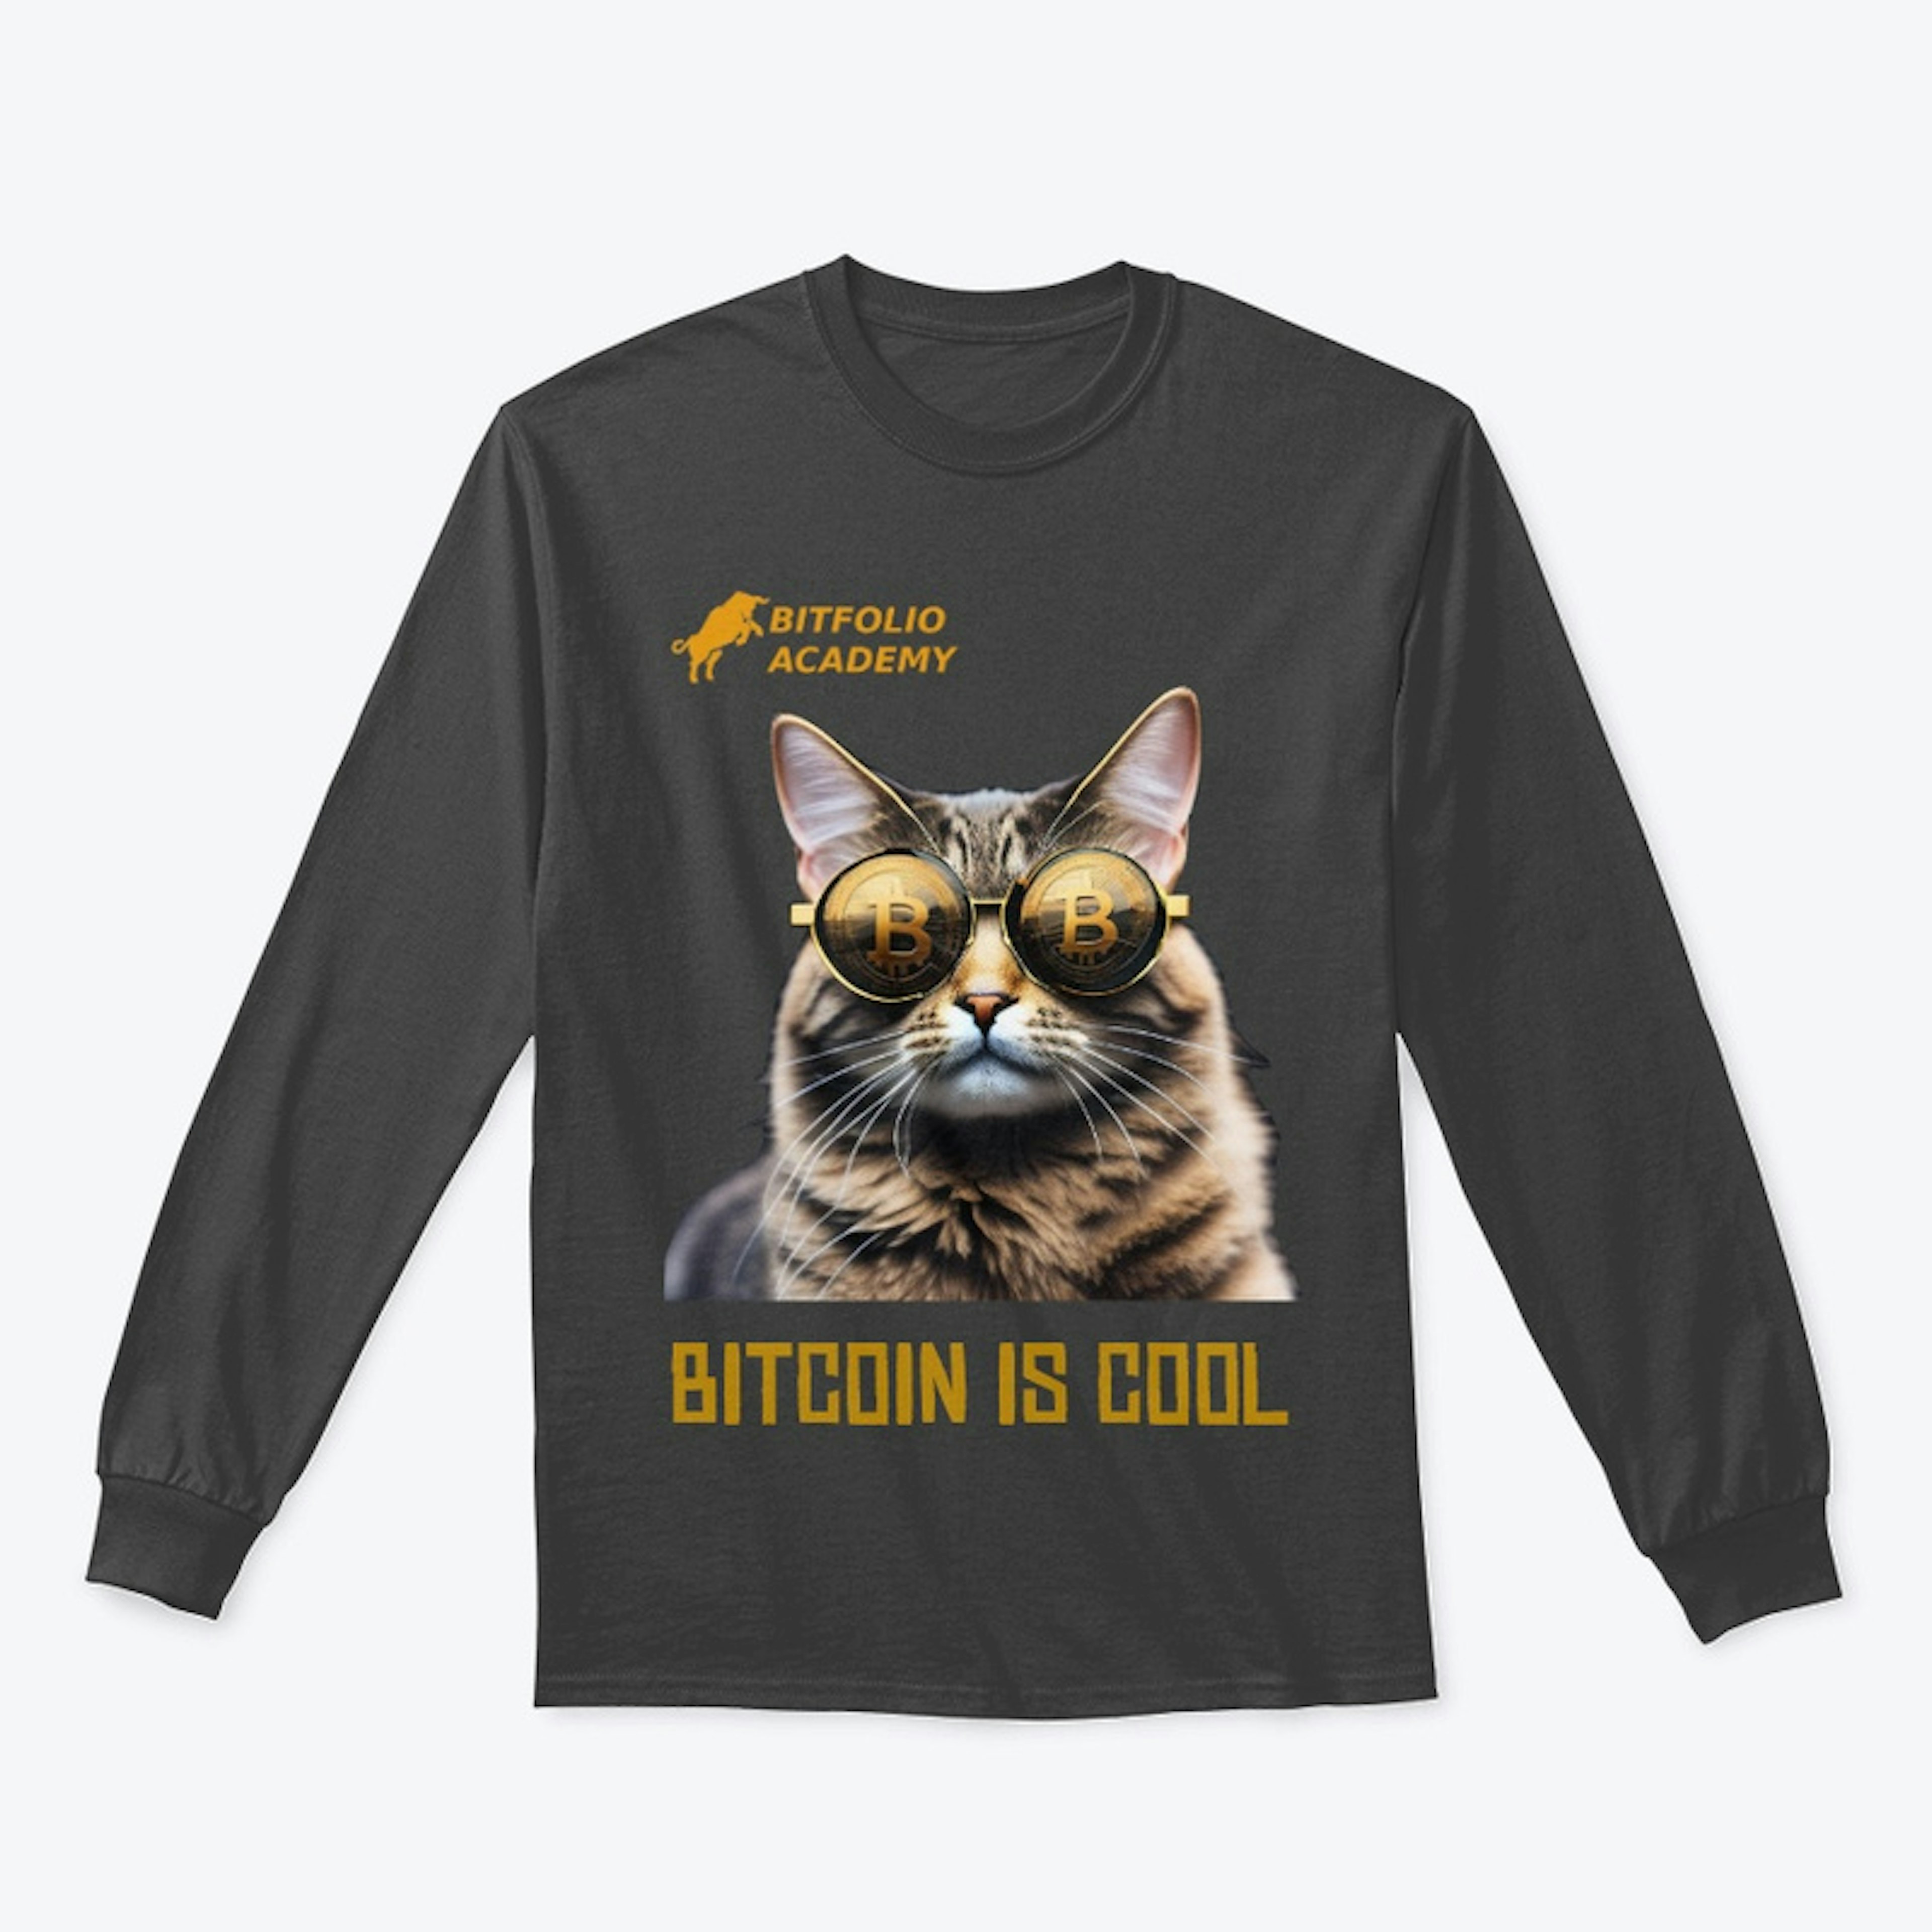 Join the Bitcoin Feline Club